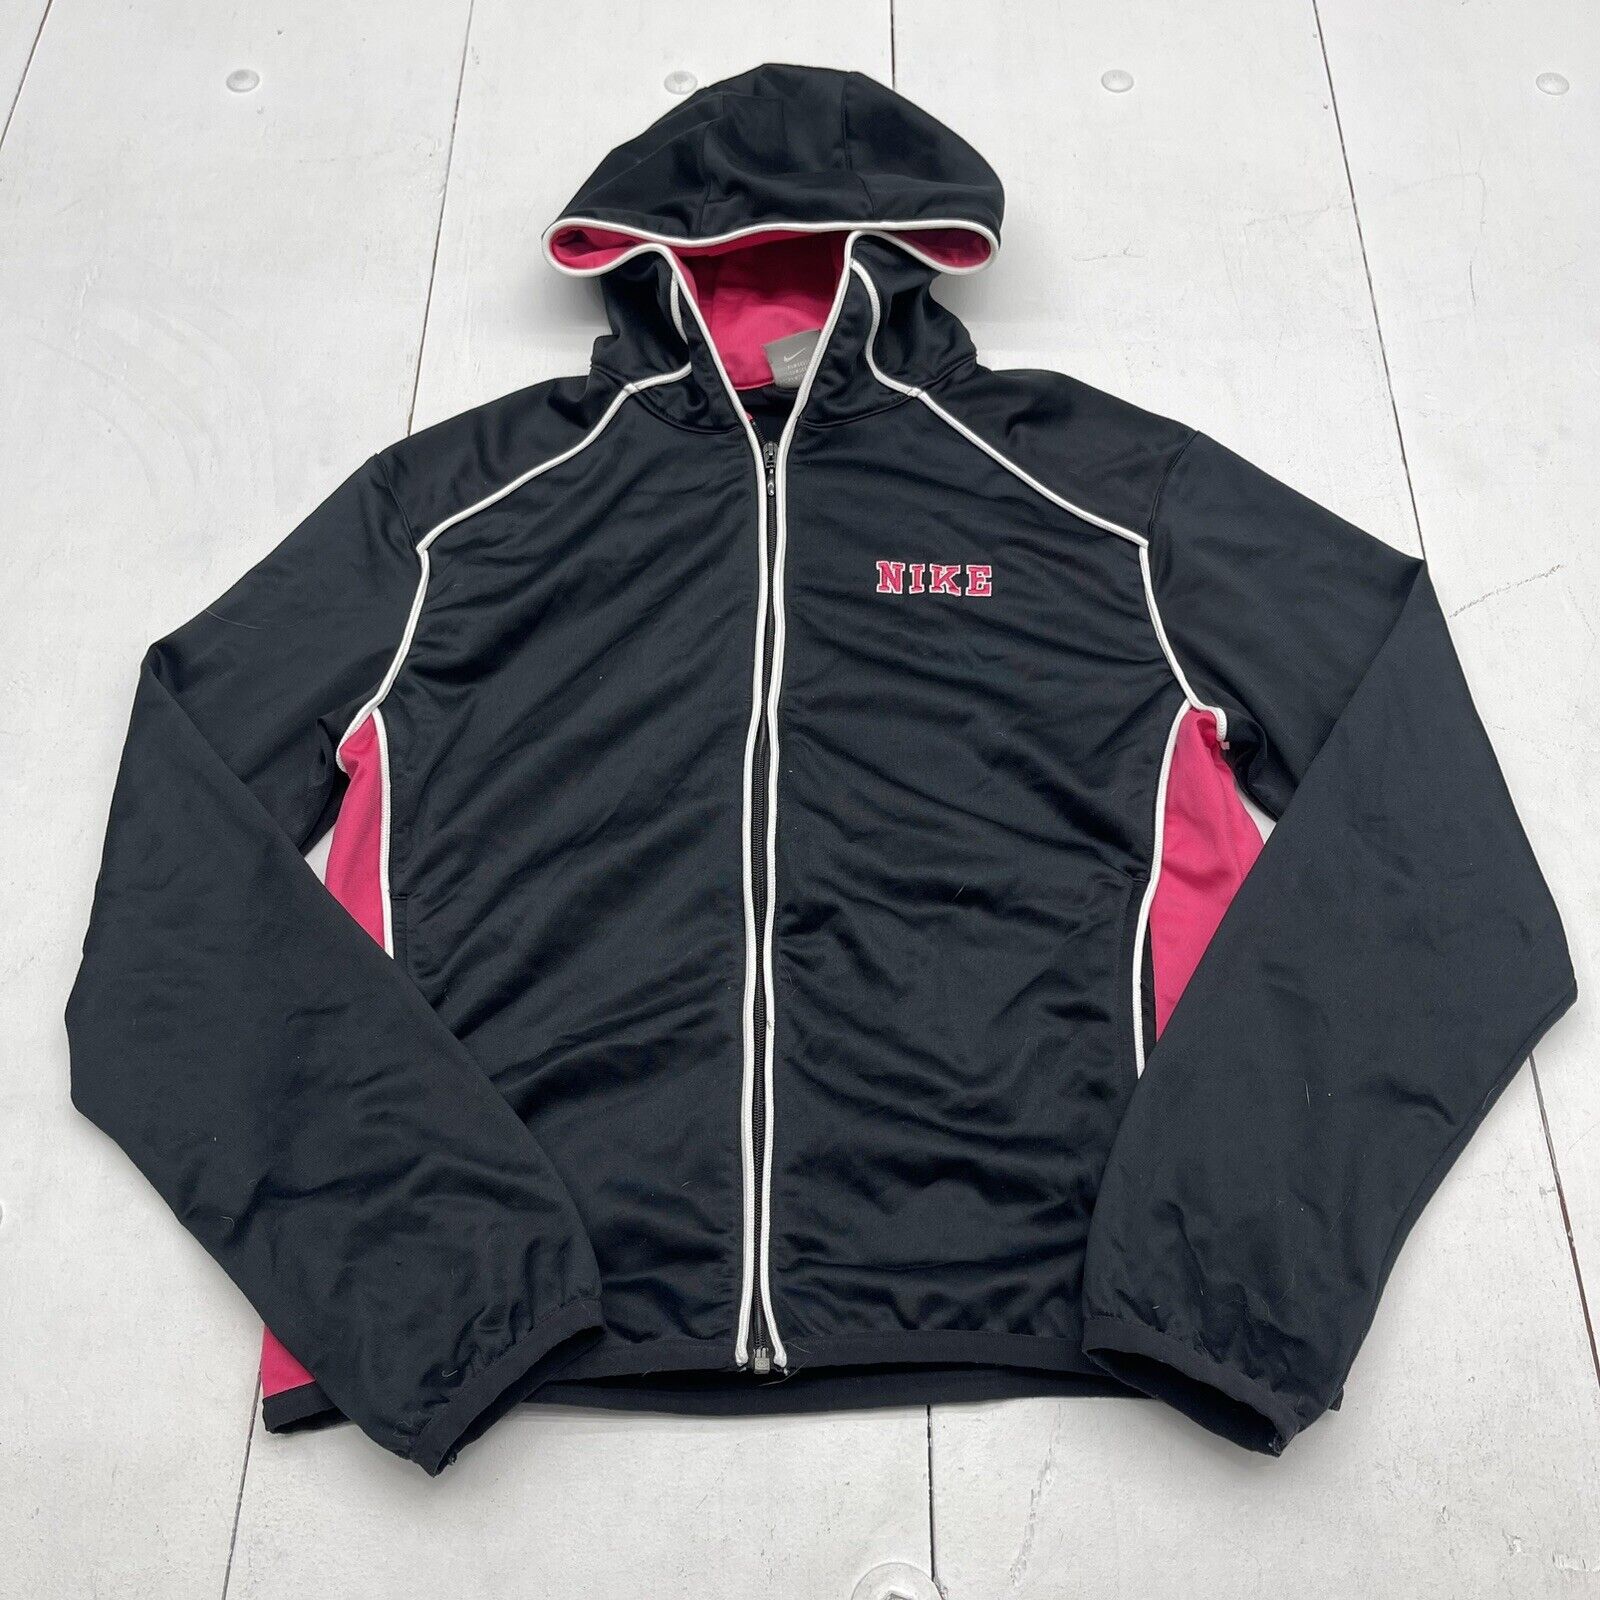 Nike Black Satin Embroidered Logo Zip Up Jacket Women’s Size Large